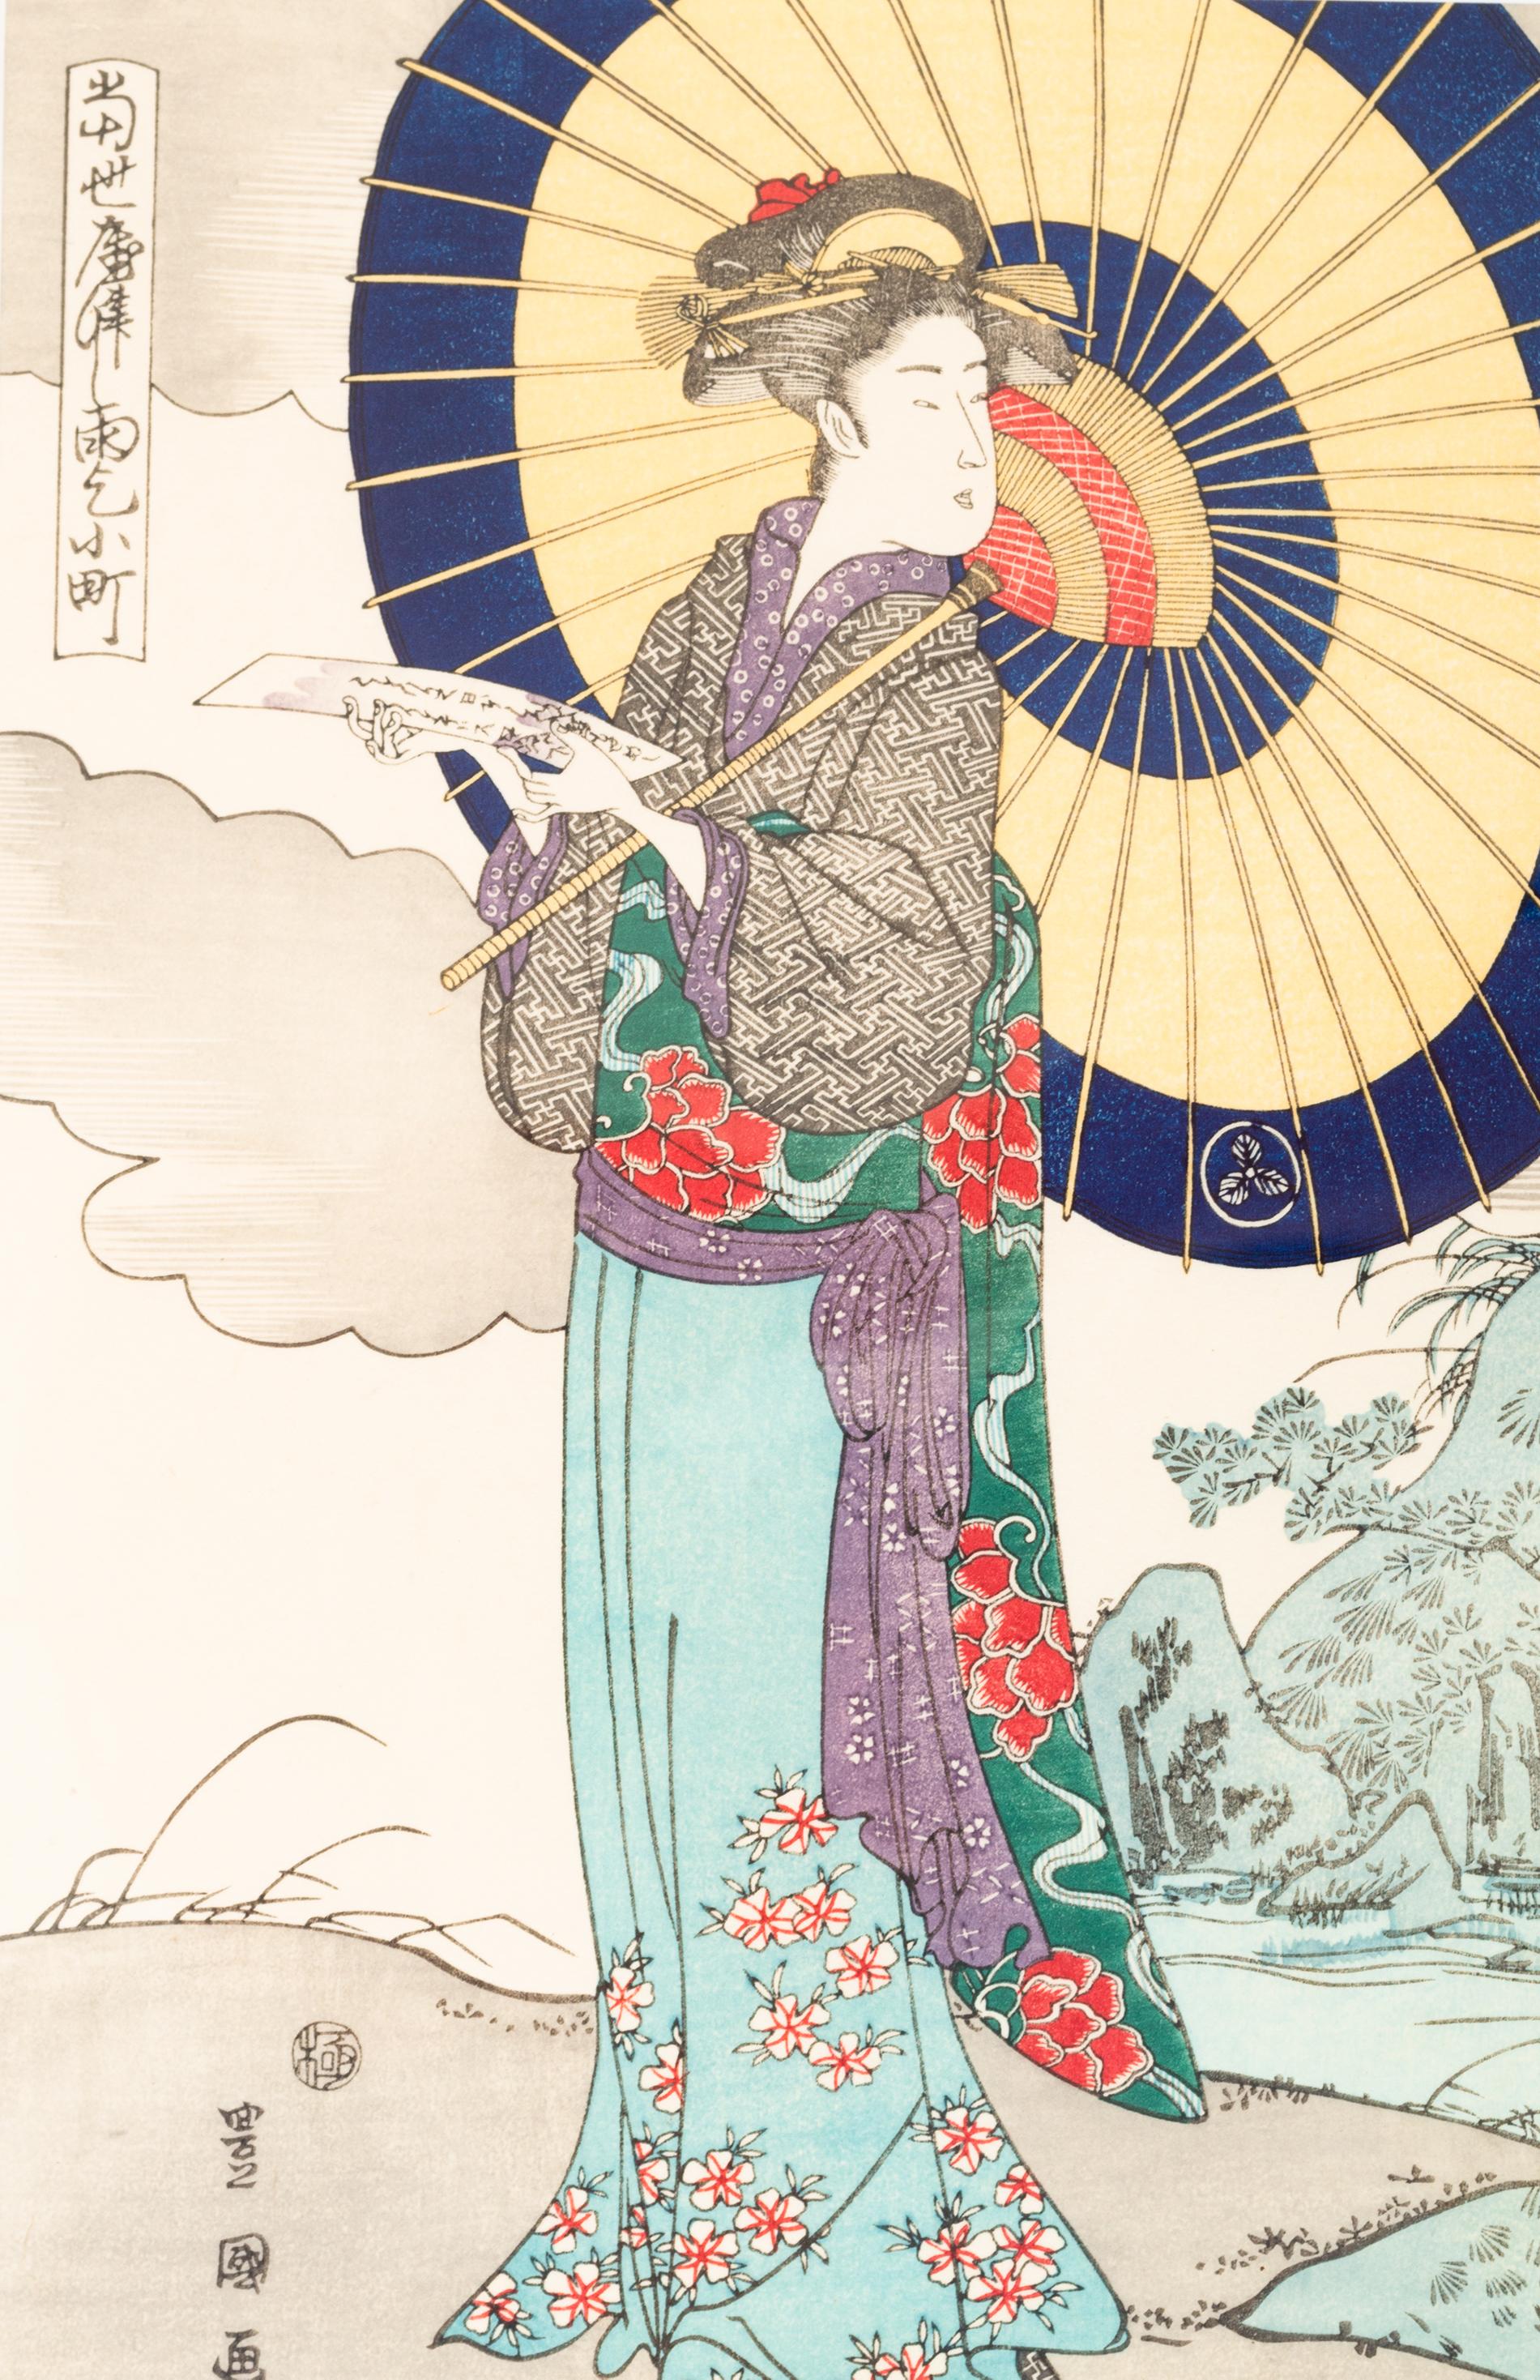 Der gerahmte Holzschnitt einer japanischen Dame stammt von Utagawa Kunisada (Toyokuni III).
einer der berühmtesten japanischen Ukiyo-e-Künstler, Utagawa Kunisada, auch bekannt als Utagawa Toyokuni III (1786-1865).

Dieser besondere